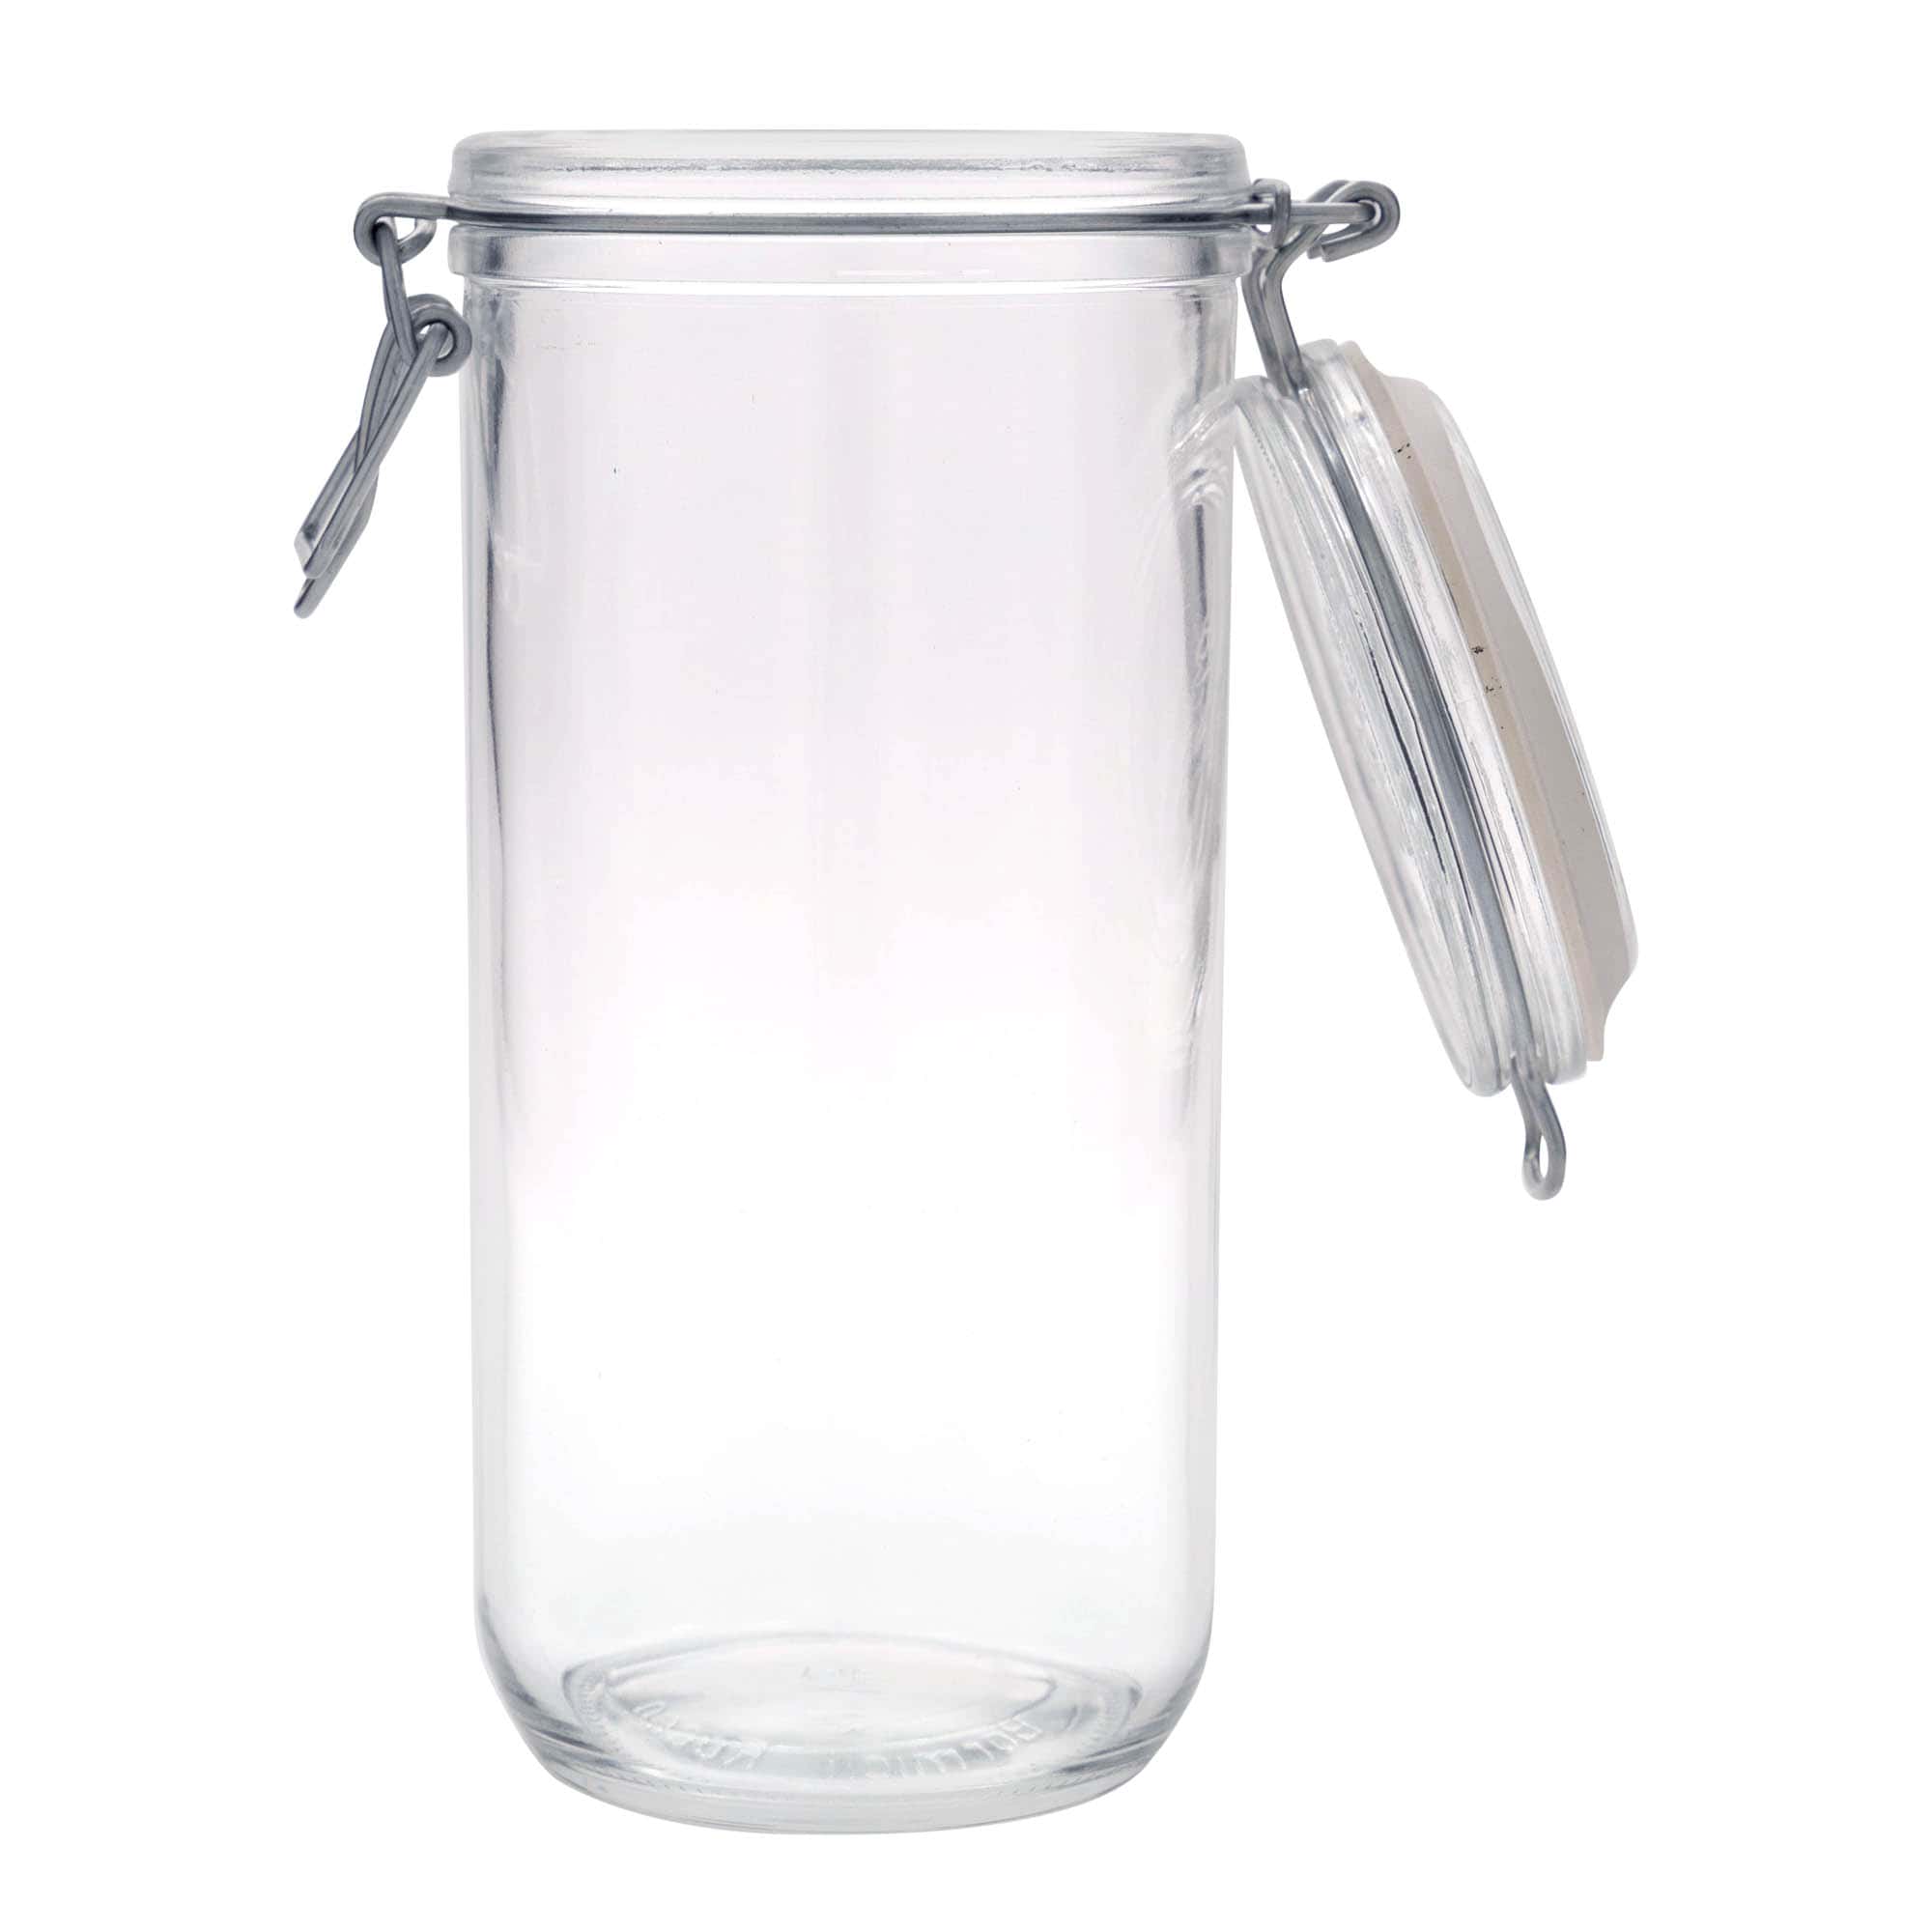 1,000 ml clip top jar 'Fido', closure: clip top